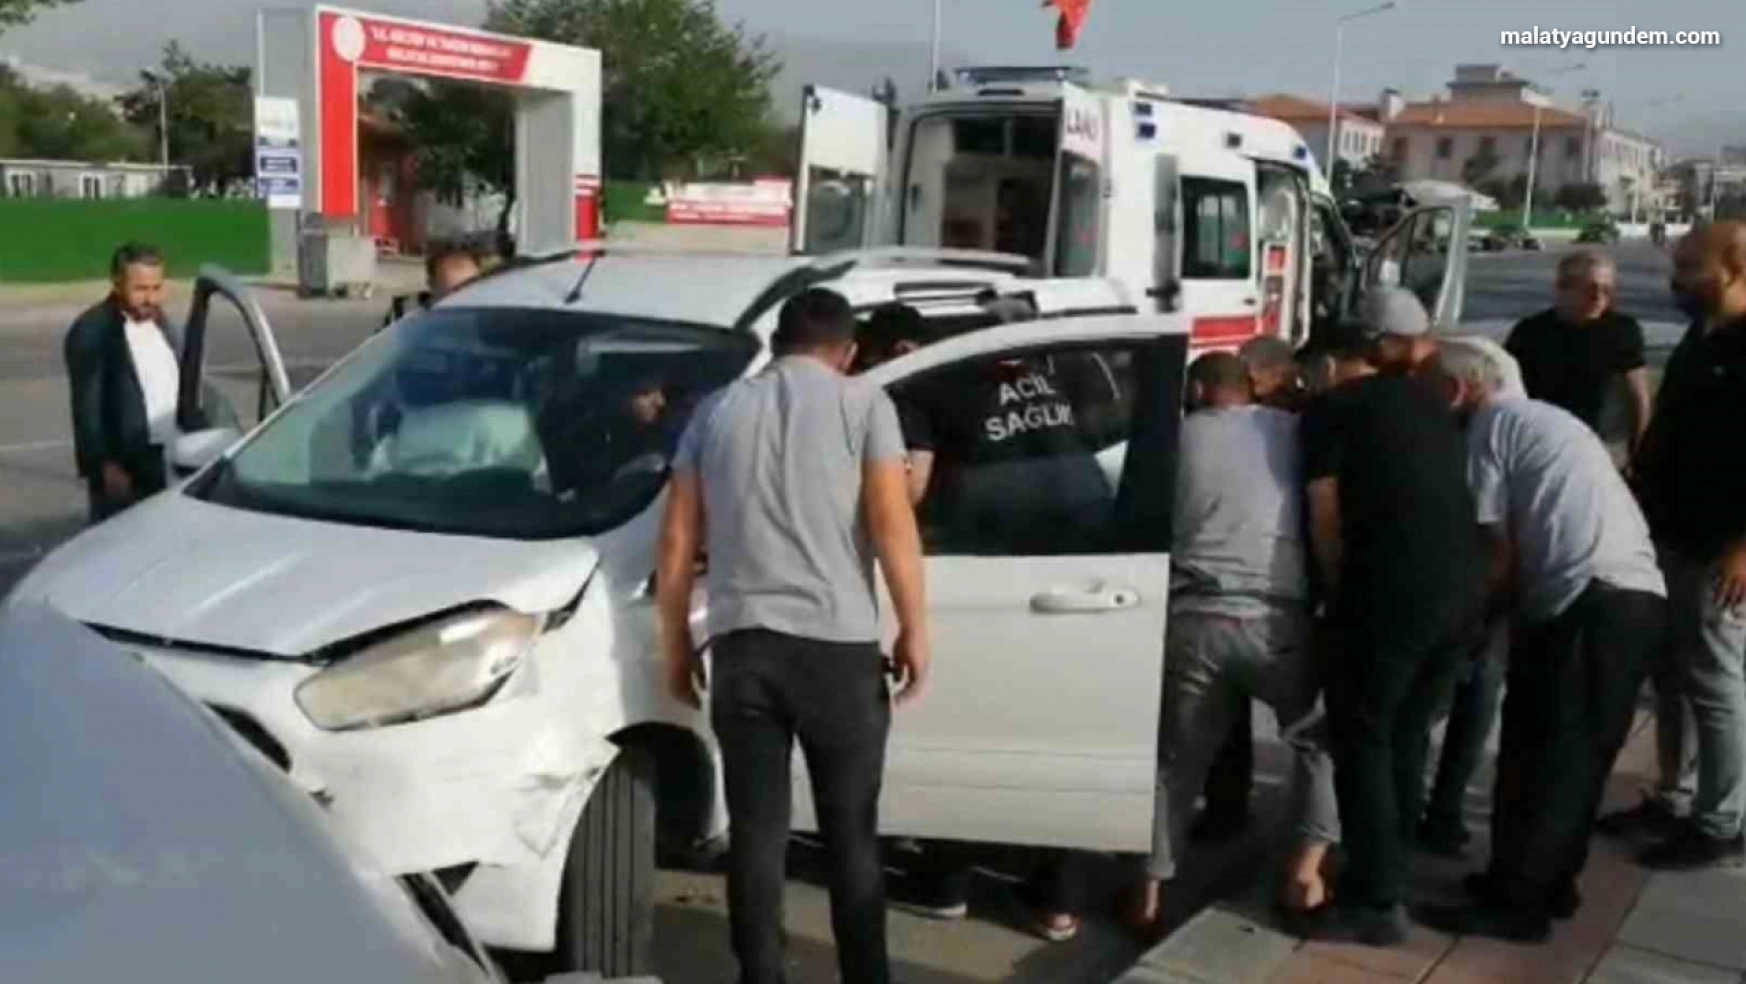 Malatya'da trafik kazası: 1 yaralı